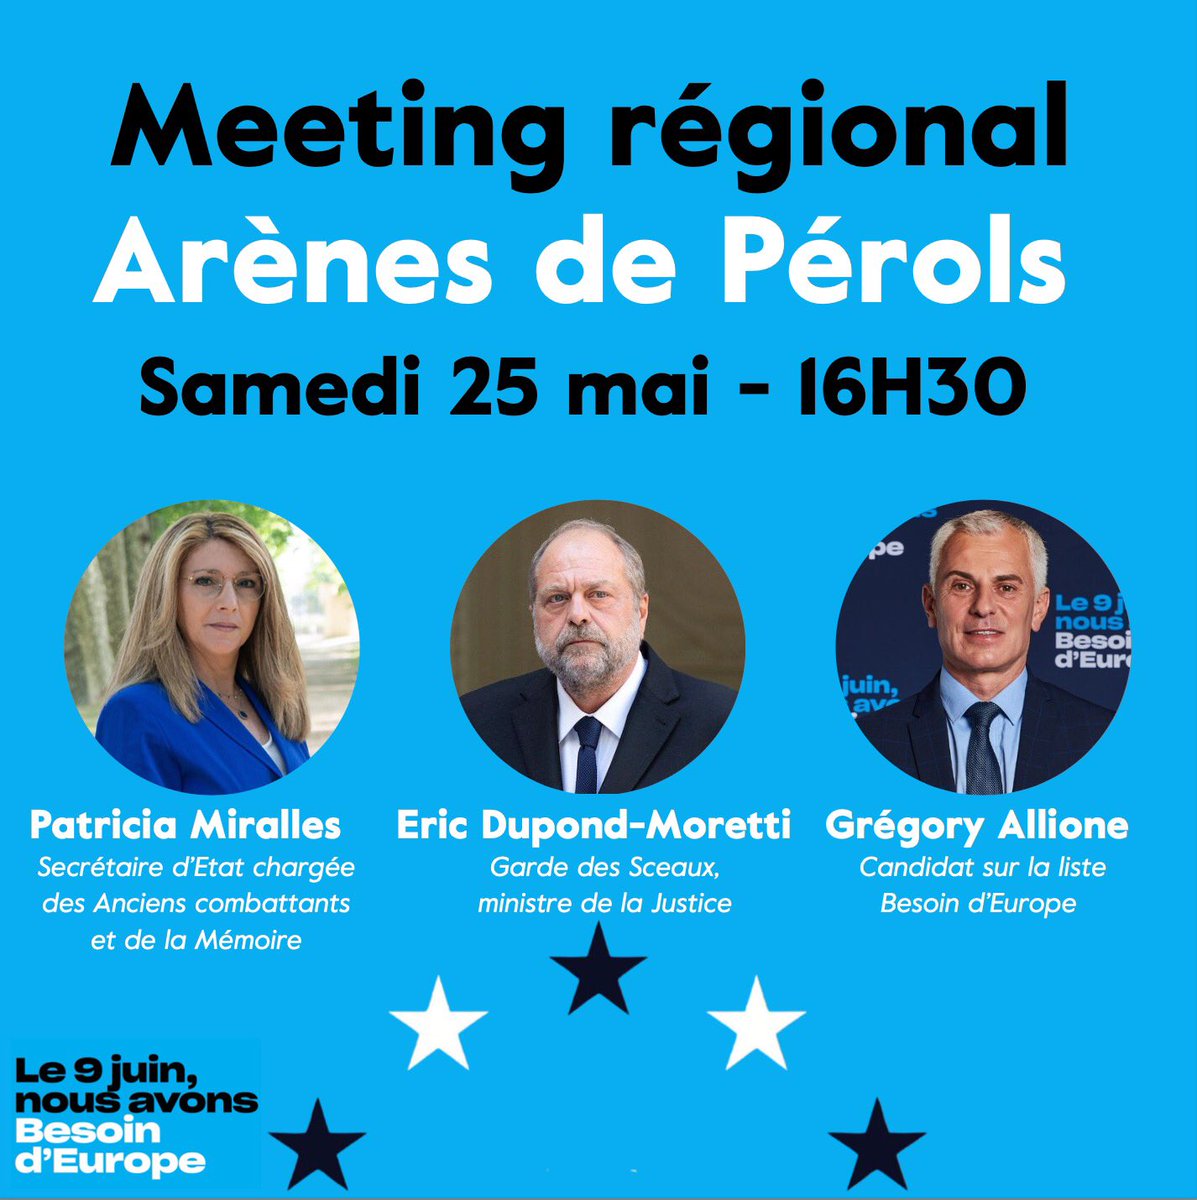 📍🇪🇺 Rendez-vous le 25 mai dans les arènes de Pérols pour le meeting regional #Occitanie avec @E_DupondM et @GregoryAllione !

Inscrivez-vous ➡️ parti-renaissance.typeform.com/to/SCtIkRcN